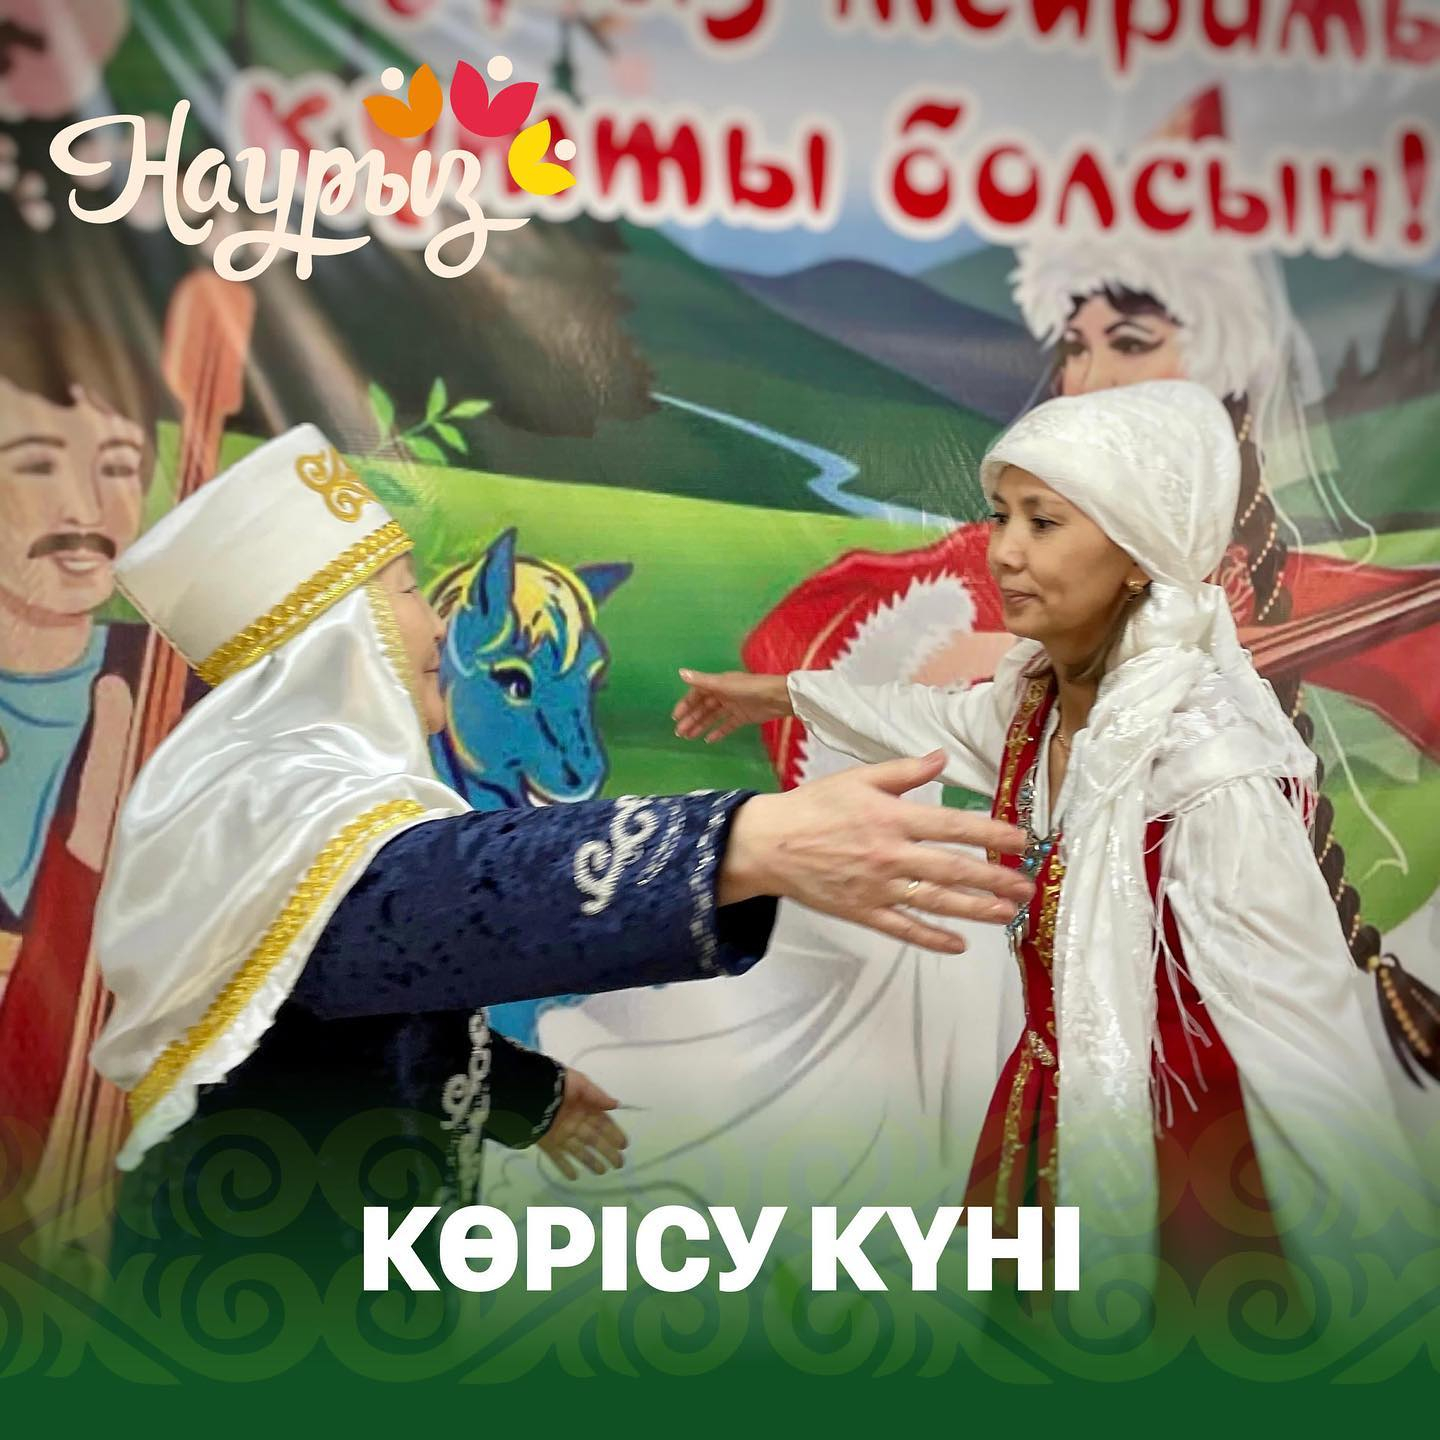 Көрісу күні - Амал мерекесі – древняя казахская традиция приветствия и благословления. 14 марта, за неделю до Дня весеннего равноденствия – Наурыза, считается началом нового года. В этот день всем миром люди выходят в красочных новых одеждах, приветствуют